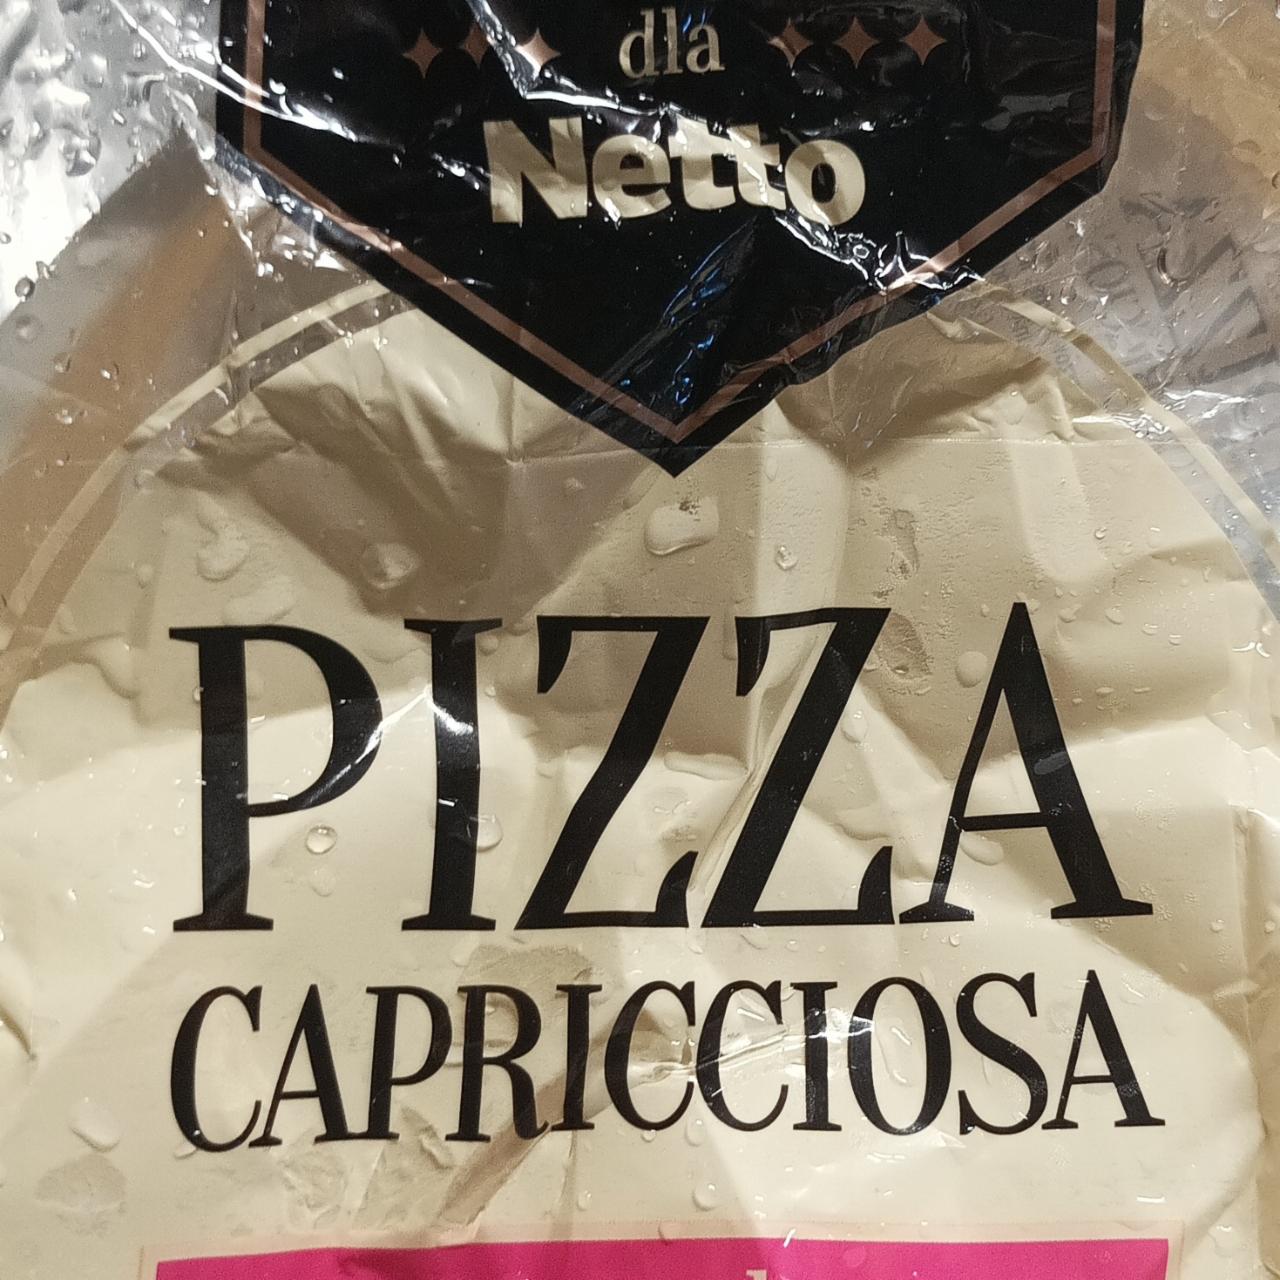 Zdjęcia - Pizza Capricciosa Perfetto dla Netto